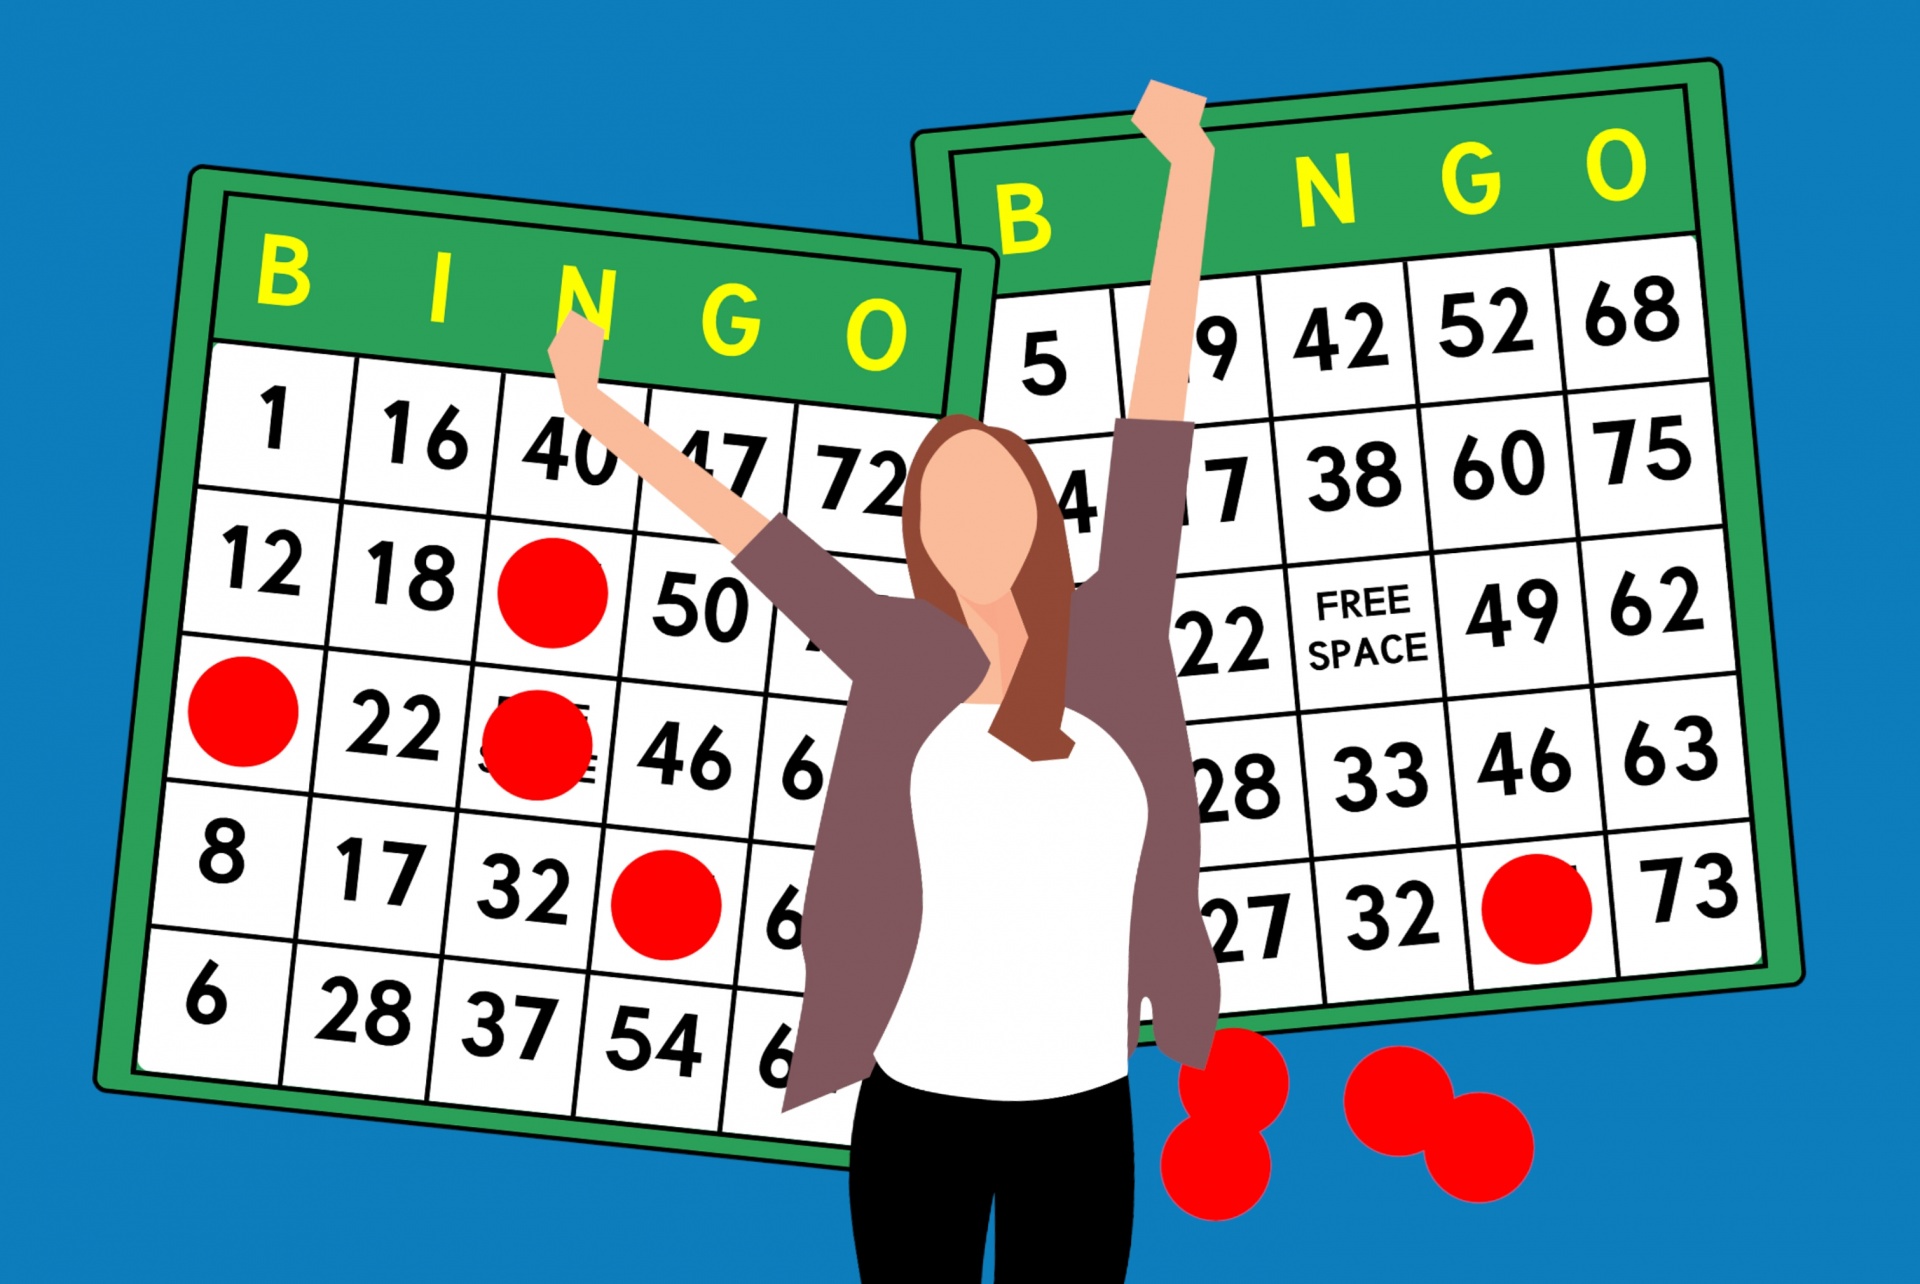 bingo fun fact is stress relieve